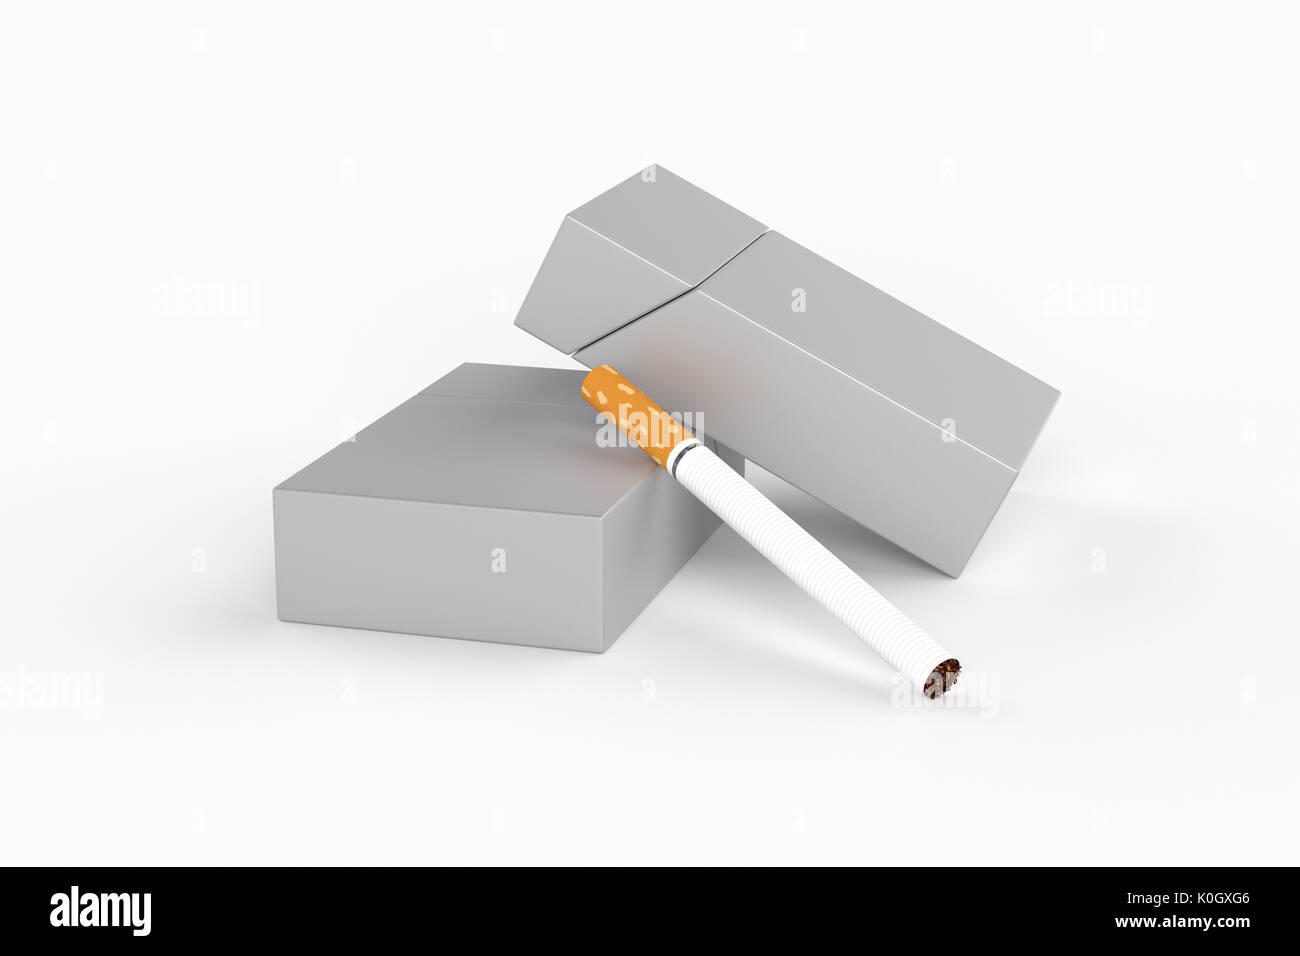 3D Render composición de dos cajas de cigarrillos king size o paquetes de cigarrillos con sobre un fondo blanco con sombra. Plantilla para su diseño. Foto de stock